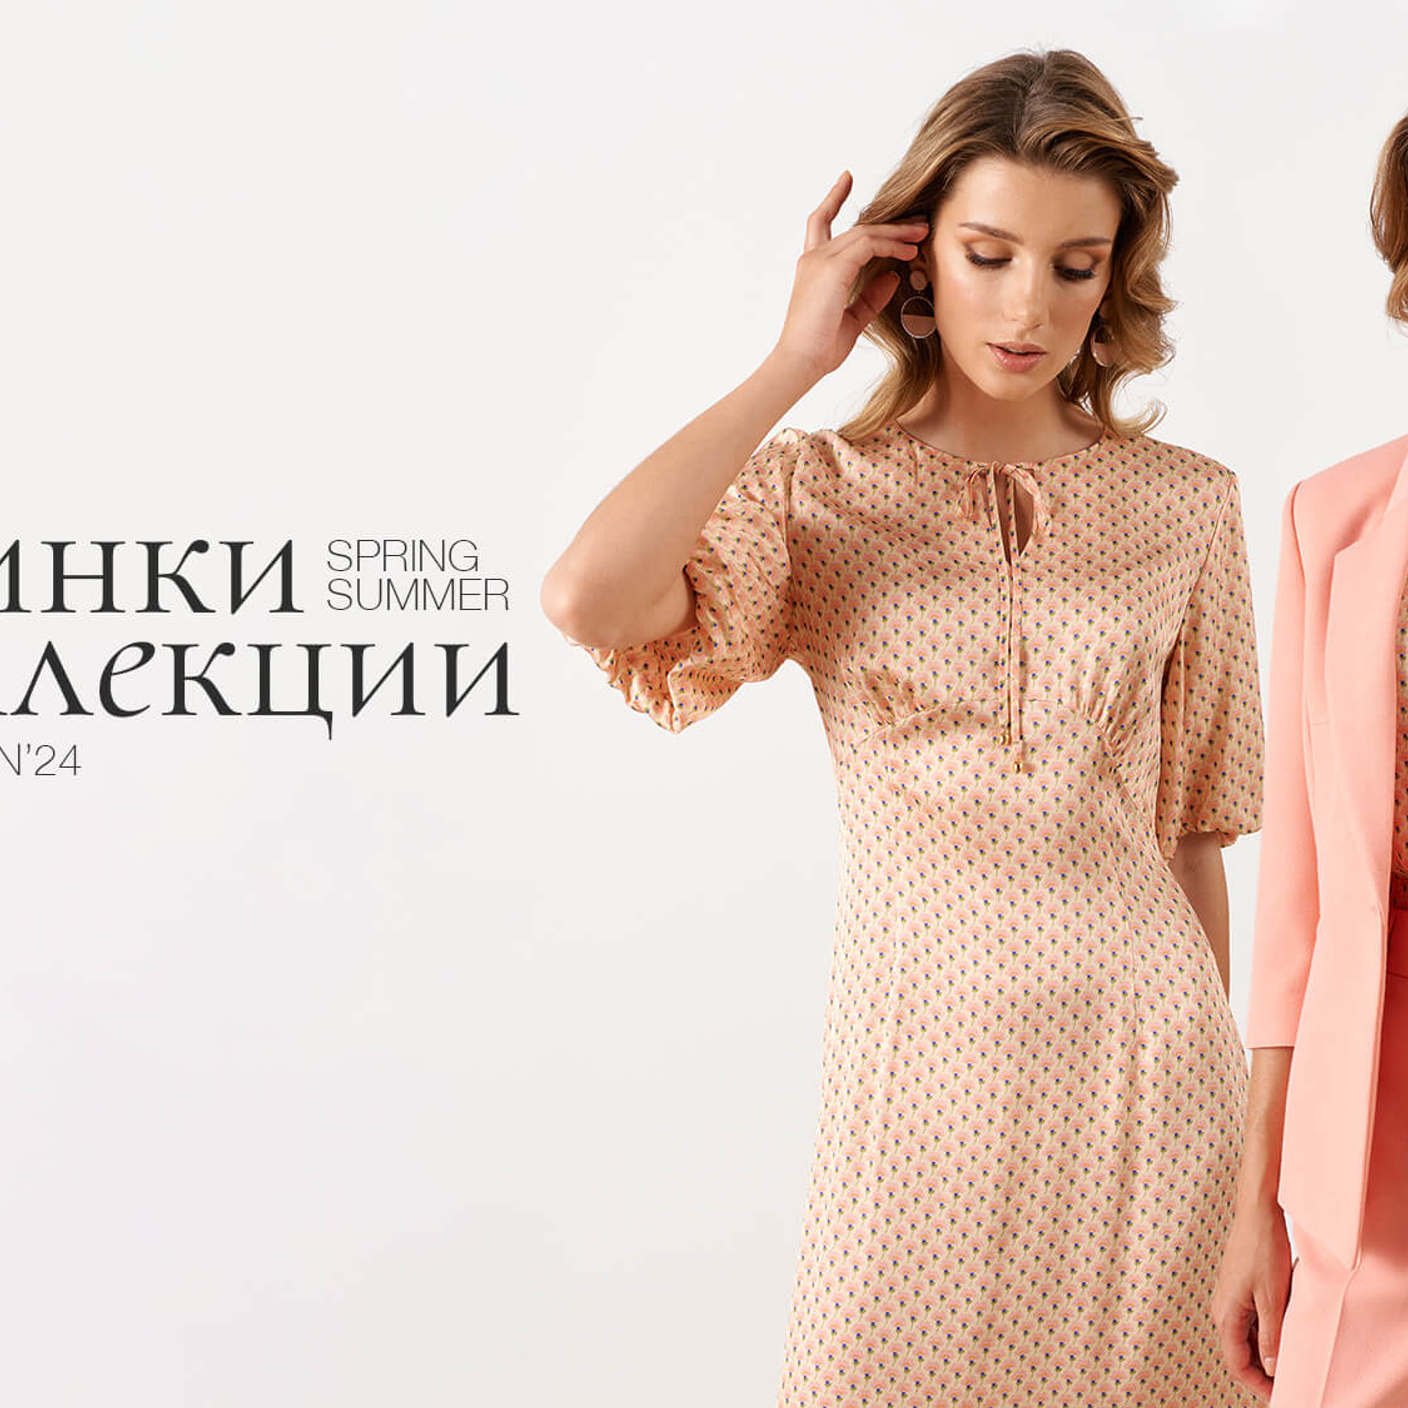 Купить модную женскую одежду оптом от производителя в интернет-магазине ЧАРУТТИ